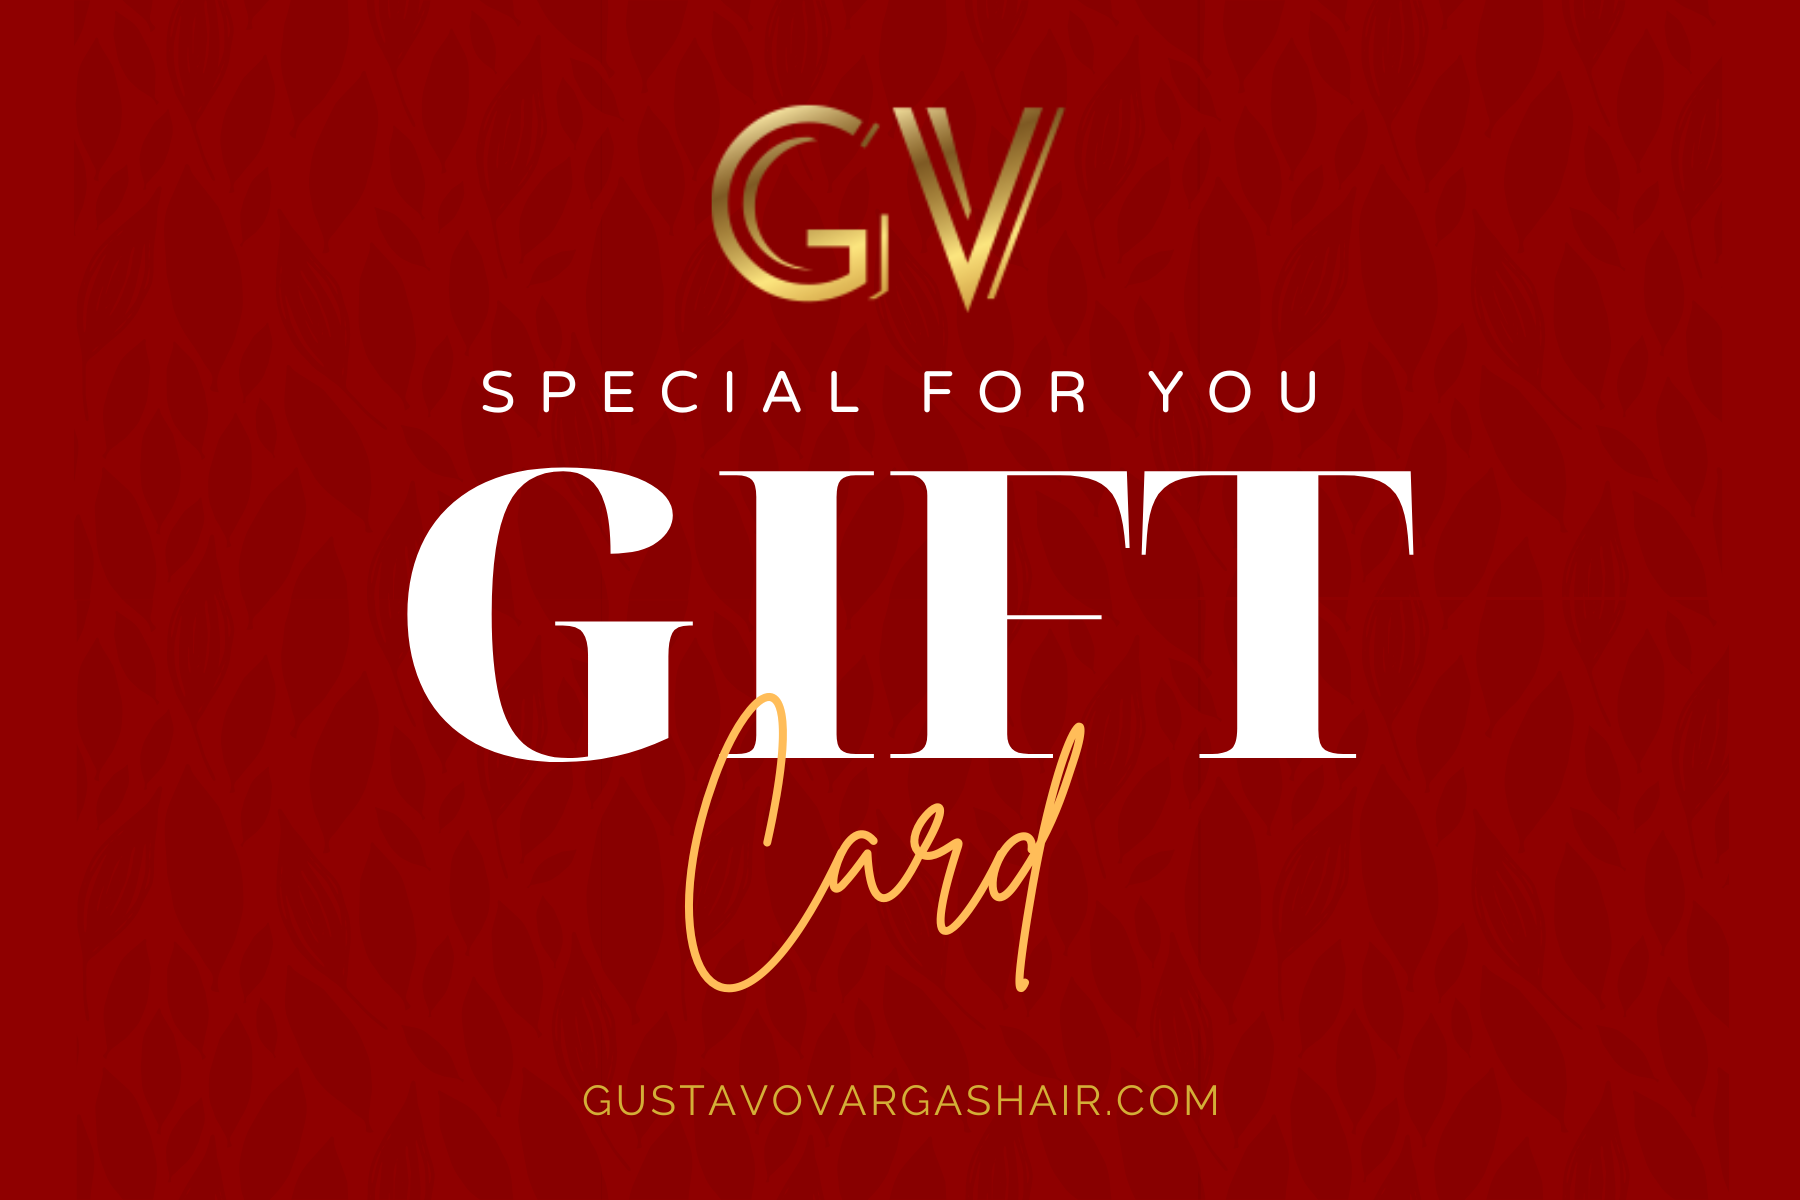 Gustavo Vargas Hair Gift Card